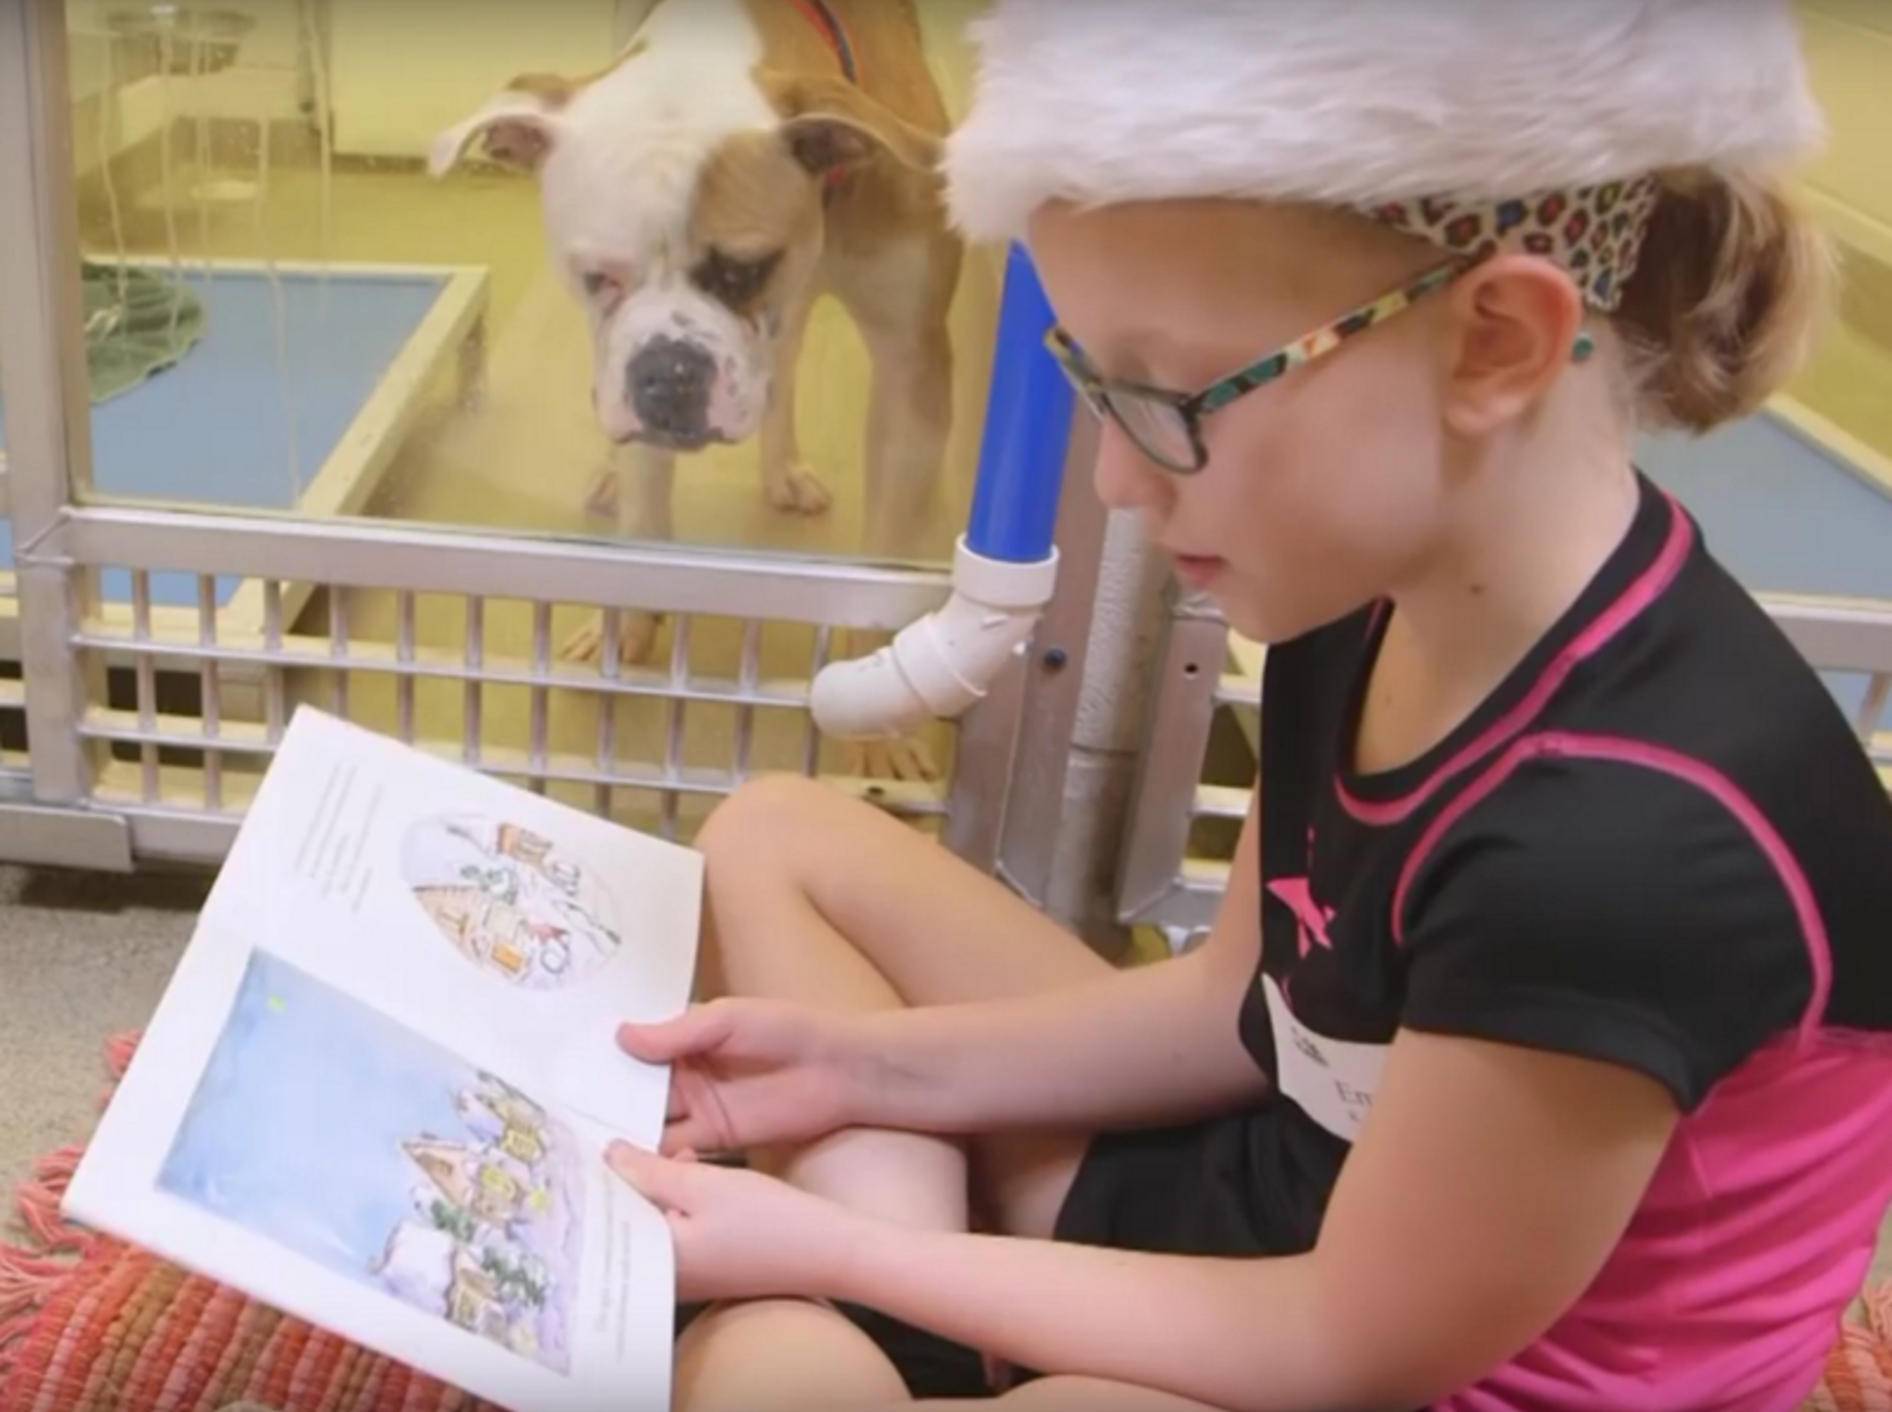 Goldig, wie der Tierheimhund dem kleinen Mädchen beim Lesen zuhört – YouTube / hsmolovesanimals